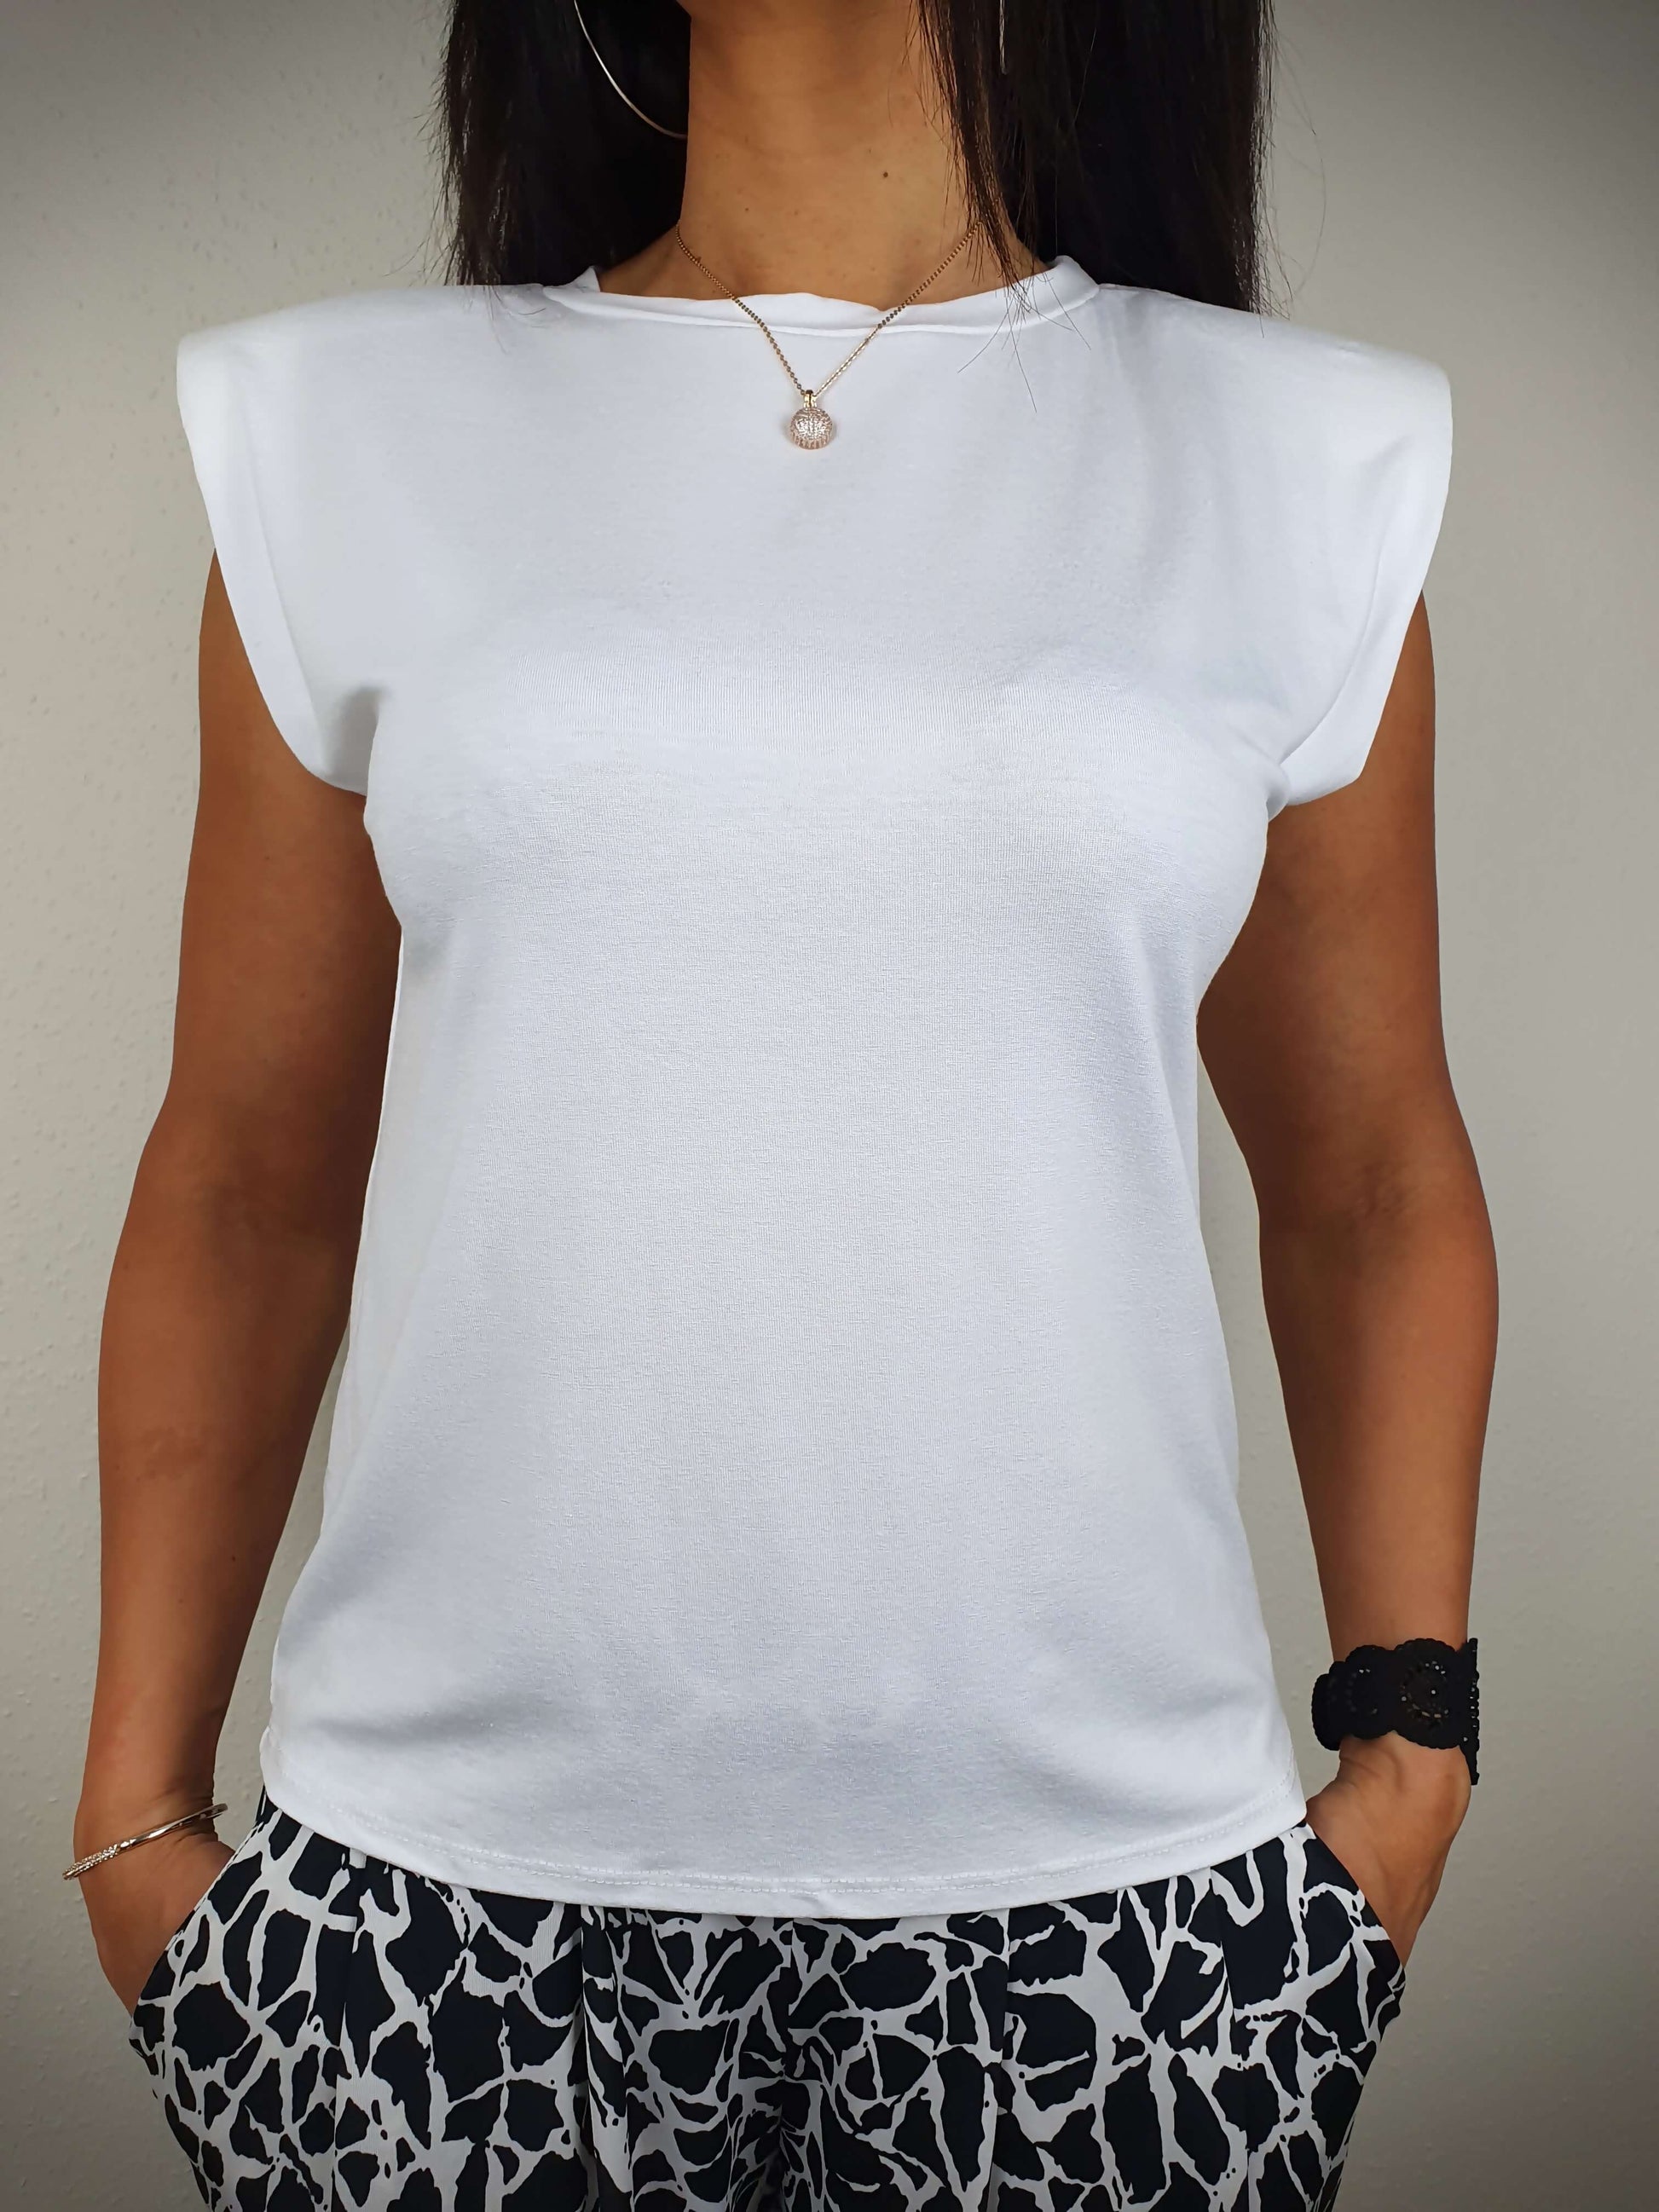 Le T-shirt blanc à une coupe droite et un col rond classique. Ses manches courtes sont dotées d'épaulettes. Fabriqué en Italie, il est composé de 95% de viscose et 5% d'élasthanne.